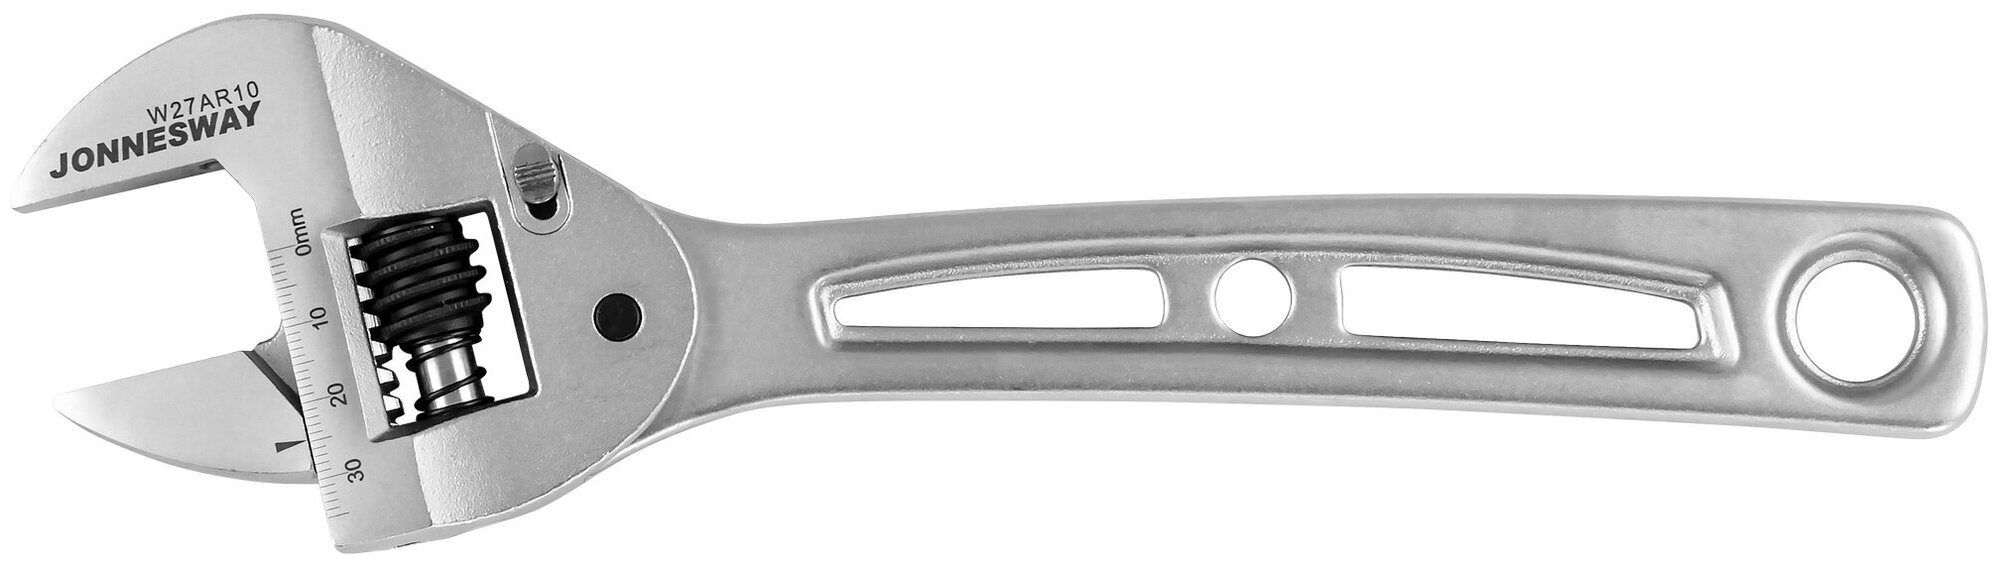 Ключ разводной облегченный трещоточный, 0-35 мм, L-250 мм.Jonnesway W27AR10